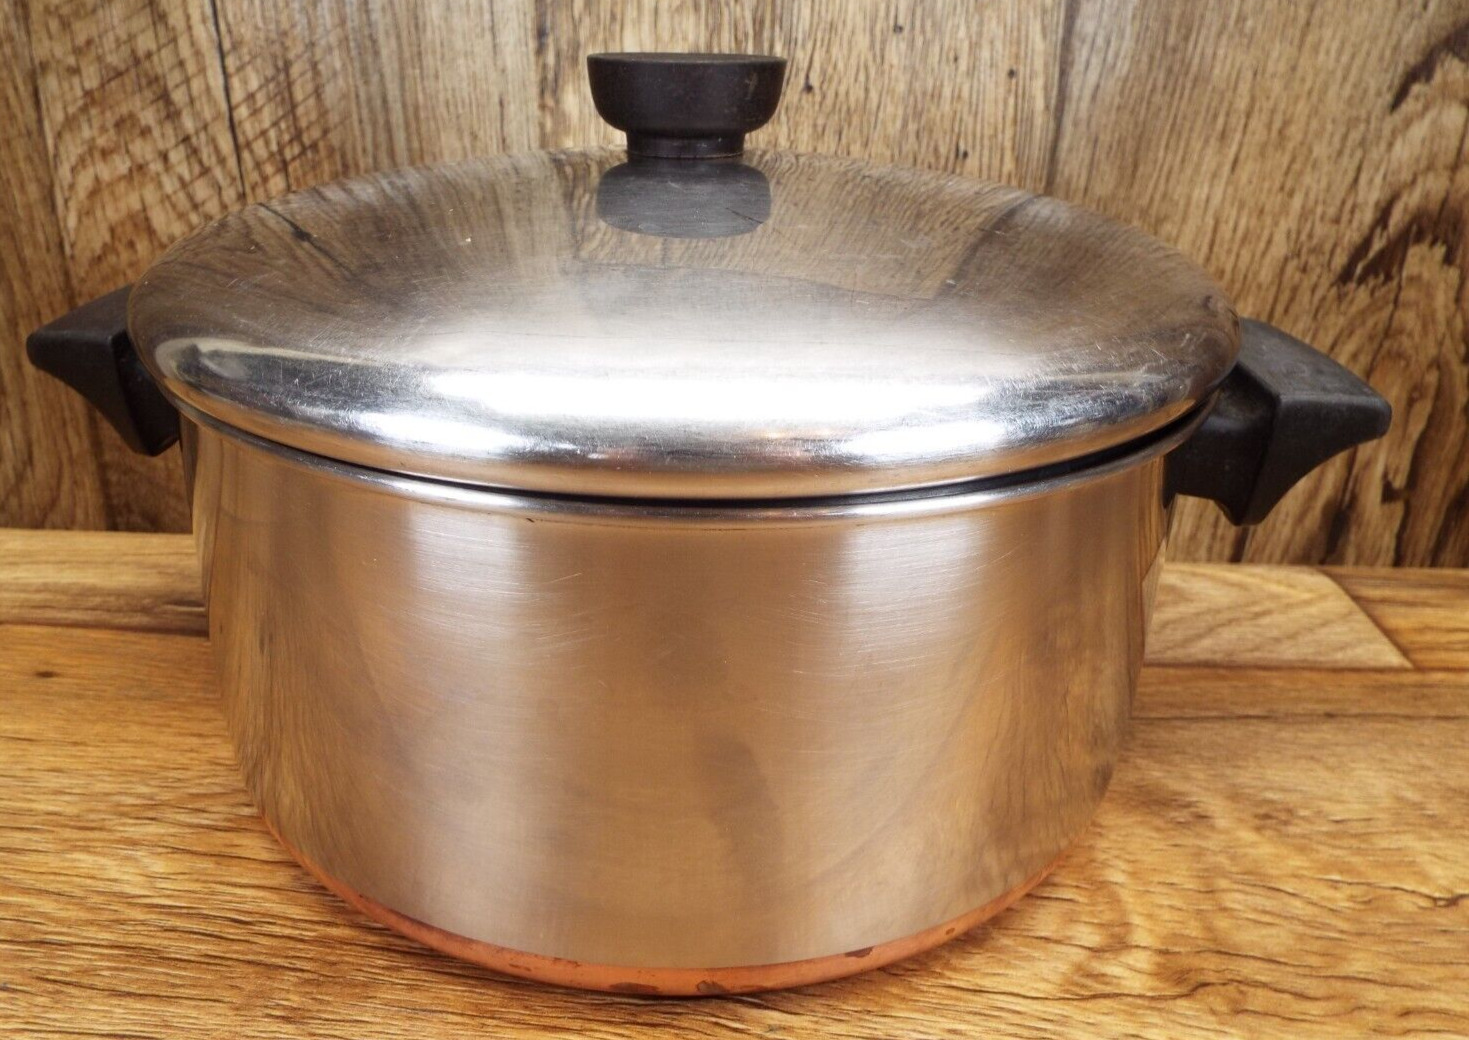 Revere Ware 4 1/2 Qt Stockpot w Lid Clinton IL Copper Bottom Vintage Pan Pot